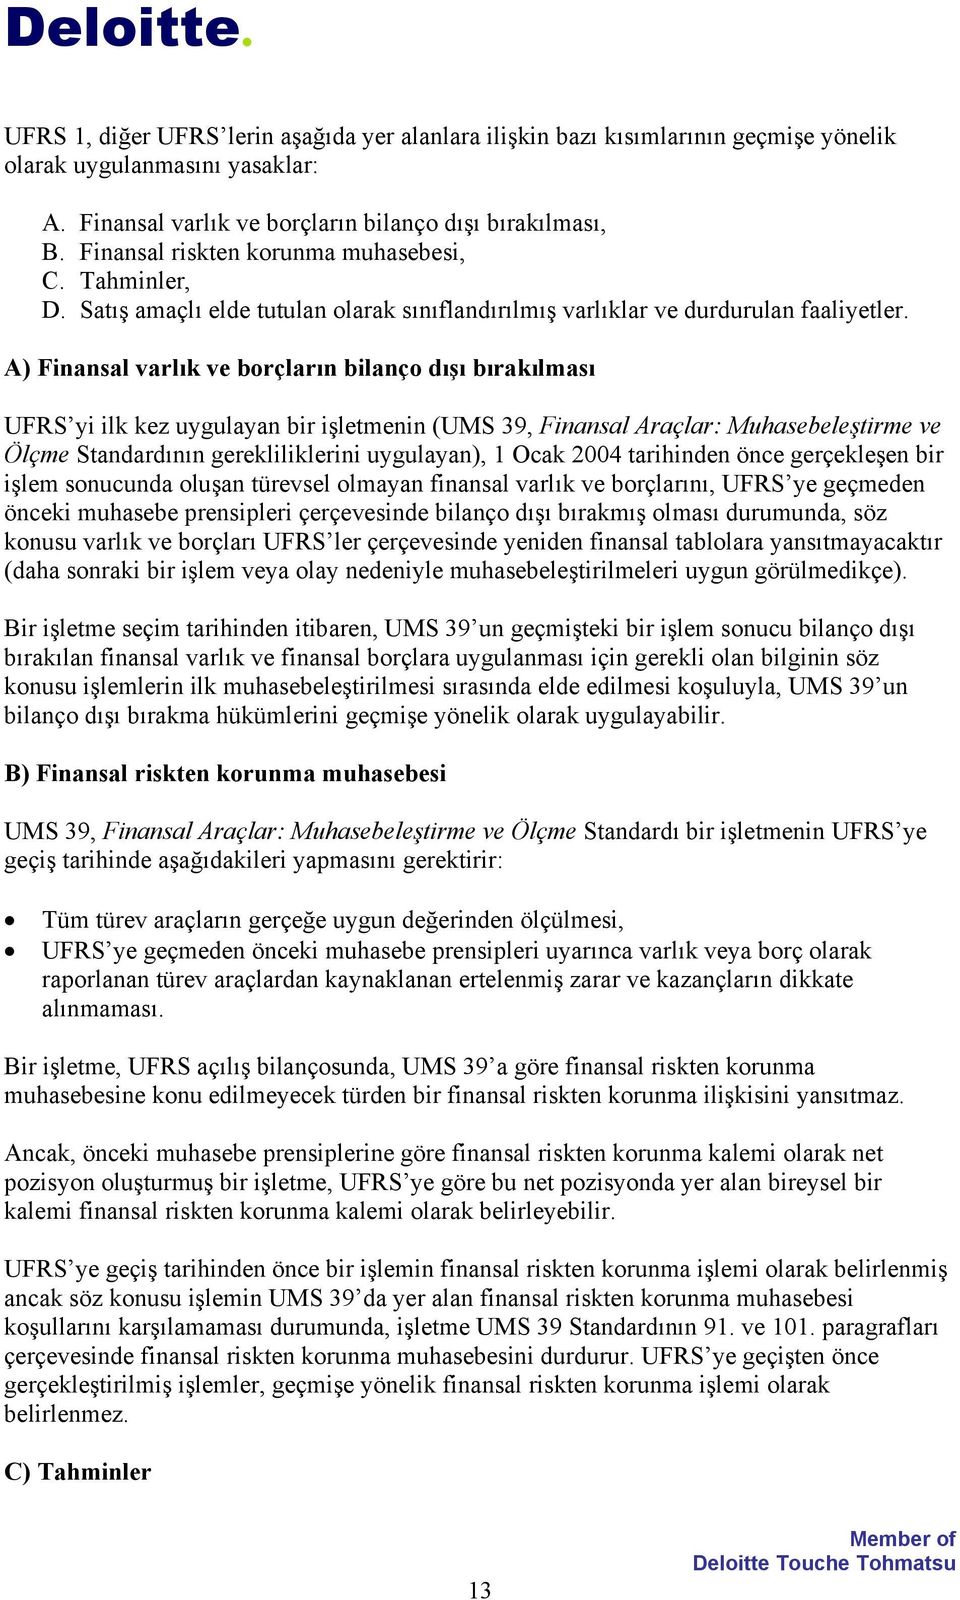 A) Finansal varlık ve borçların bilanço dışı bırakılması UFRS yi ilk kez uygulayan bir işletmenin (UMS 39, Finansal Araçlar: Muhasebeleştirme ve Ölçme Standardının gerekliliklerini uygulayan), 1 Ocak